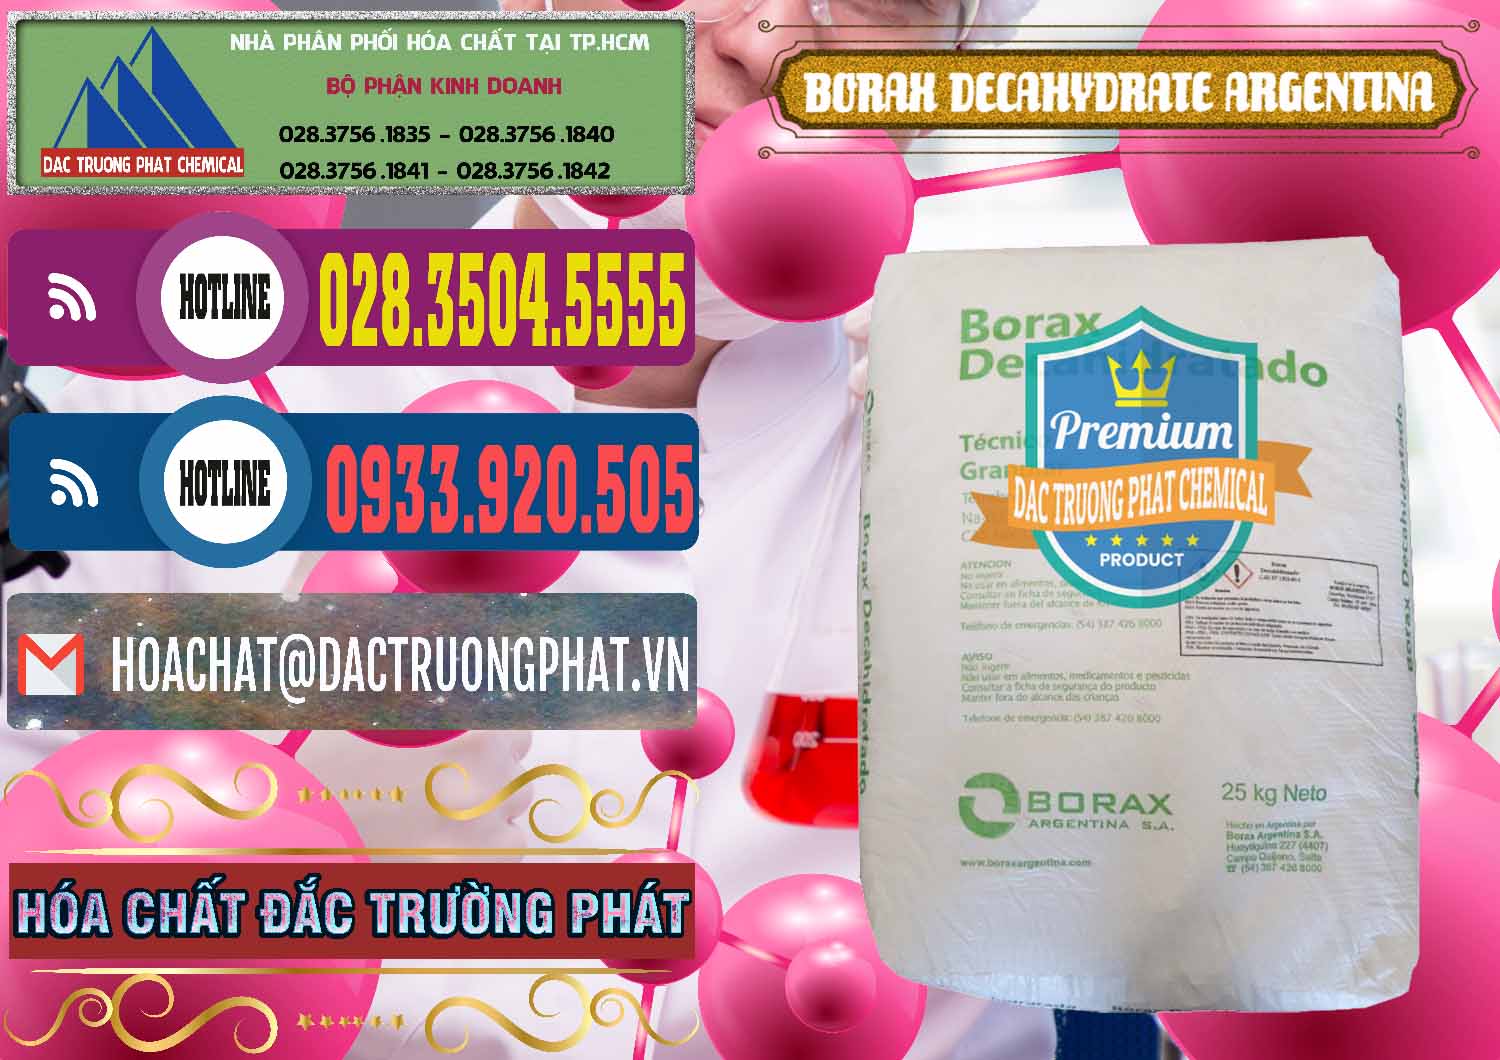 Nơi bán & phân phối Borax Decahydrate Argentina - 0446 - Chuyên phân phối _ cung ứng hóa chất tại TP.HCM - muabanhoachat.com.vn